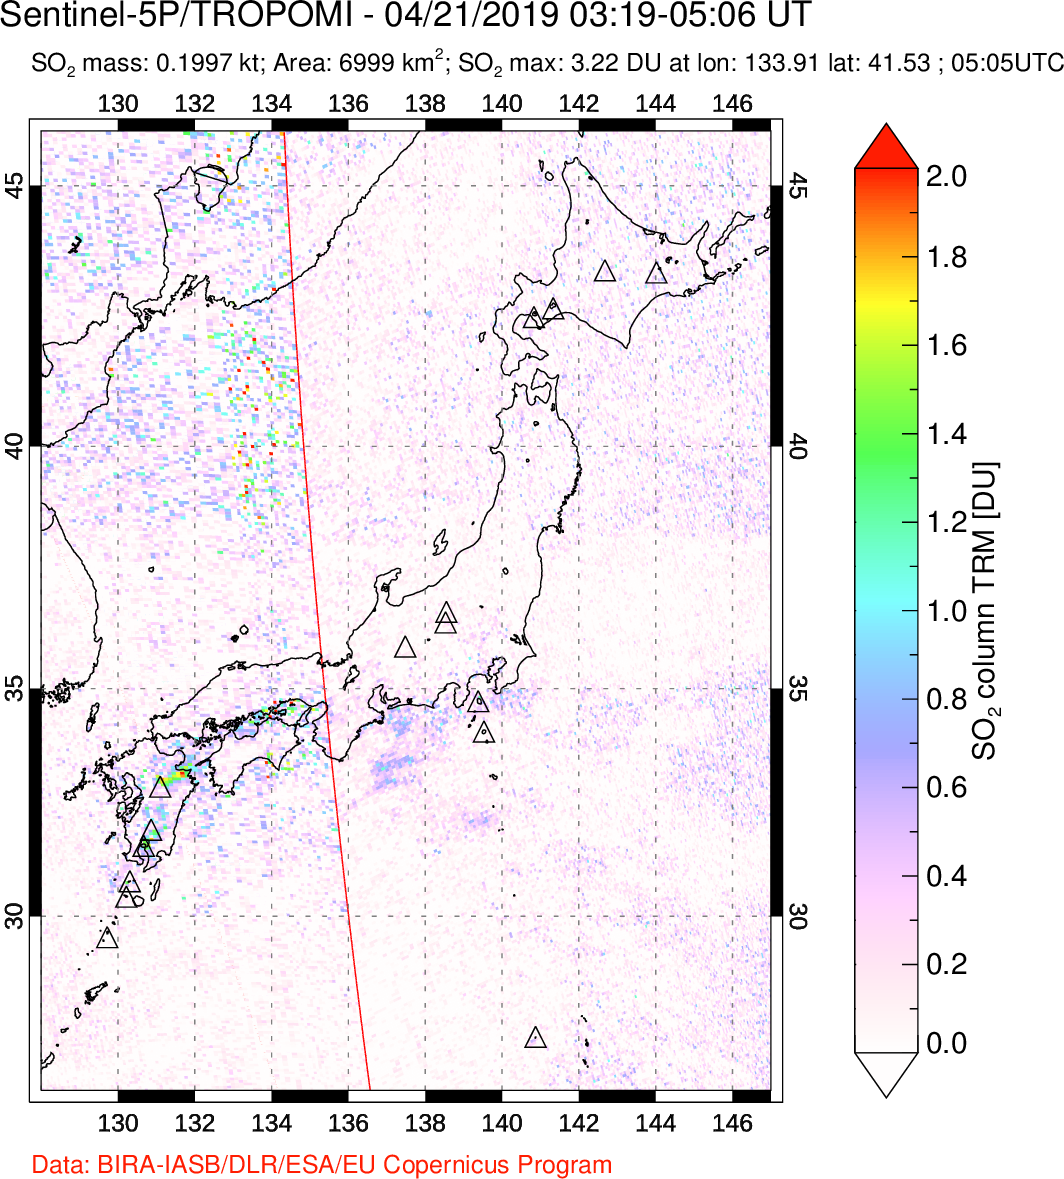 A sulfur dioxide image over Japan on Apr 21, 2019.